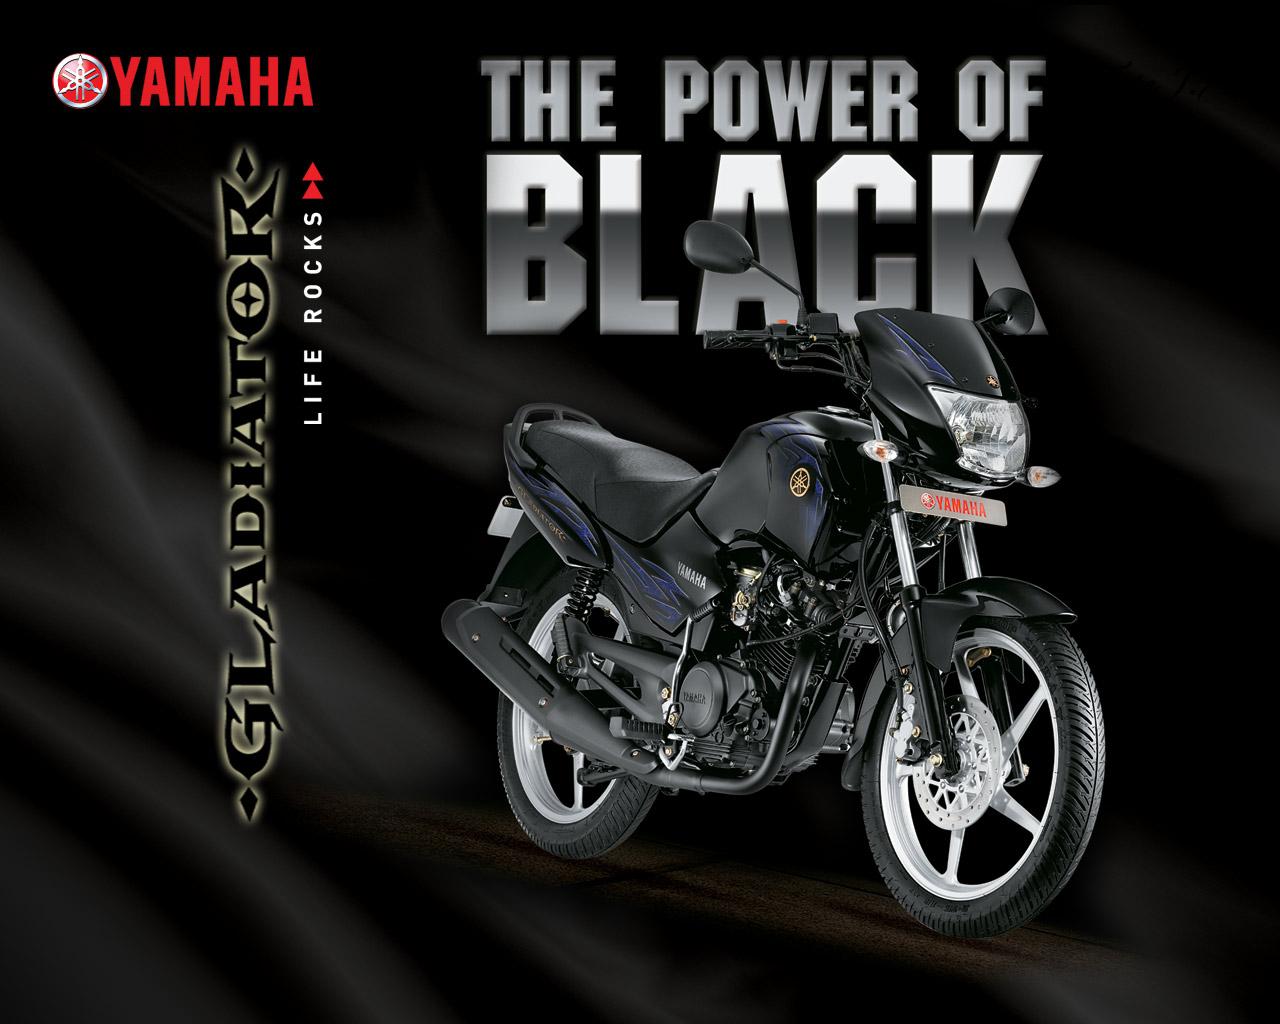 Yamaha bike photo. Picture of Yamaha Gladiator